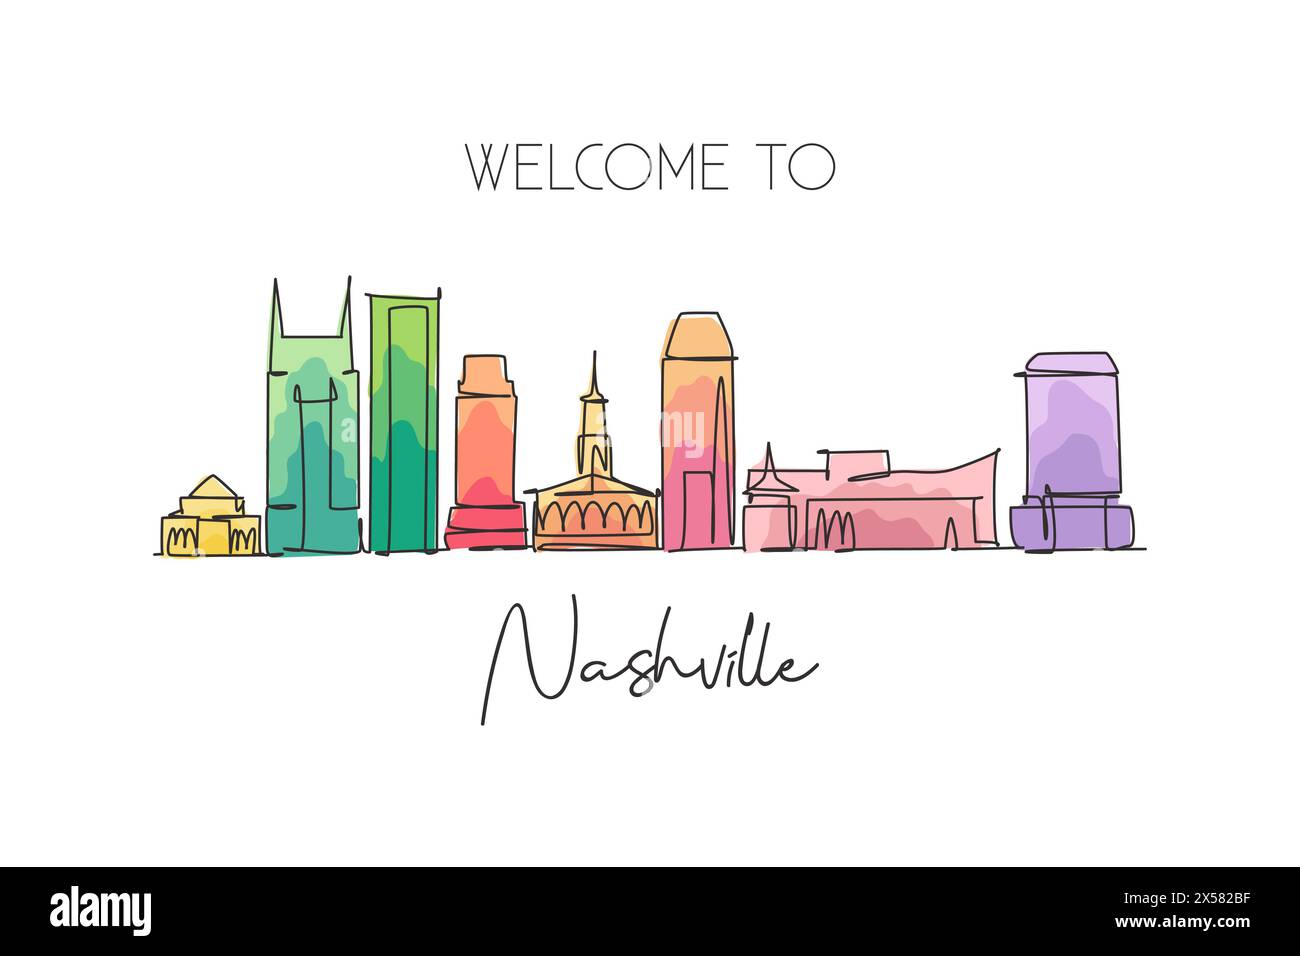 Einzelne durchgehende Linienzeichnung der Skyline von Nashville, Tennessee. Berühmte Stadt-Kratzer-Landschaft. World Travel Concept Poster mit Innenwand. Stock Vektor